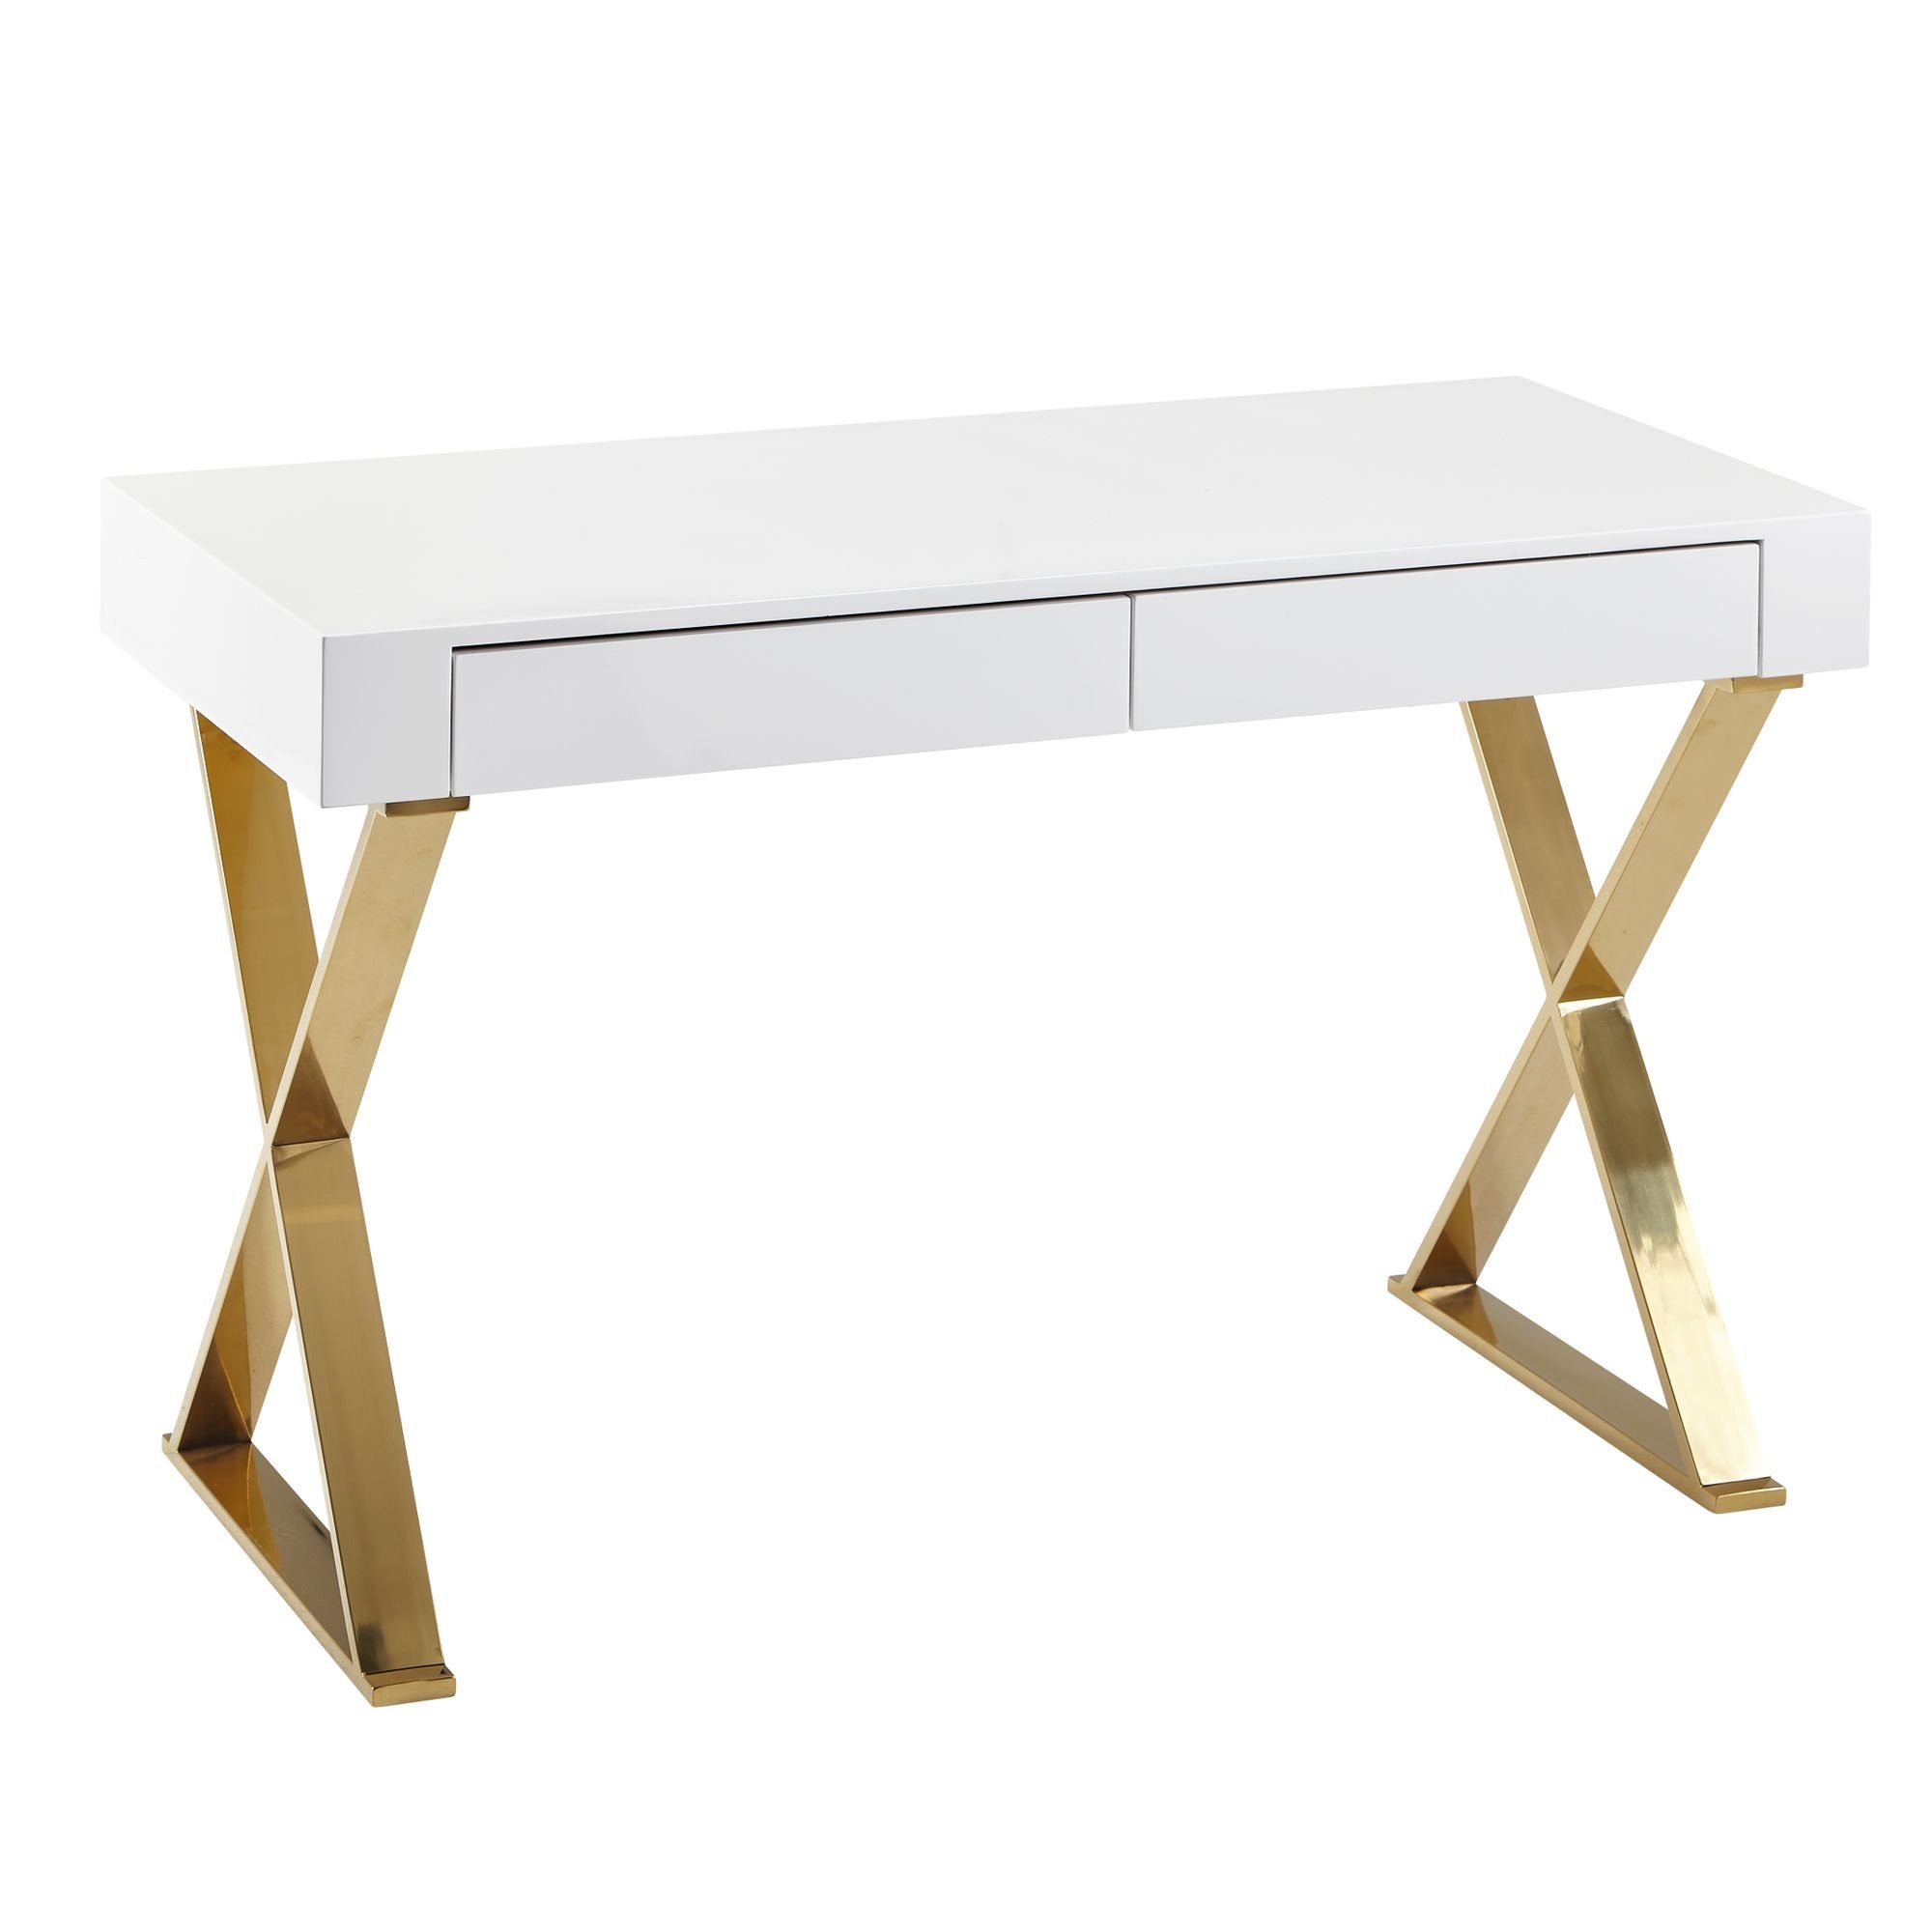 KADIMA & Weißer goldenen stilvoll Computertisch mit Beinen, DESIGN geräumig Schreibtisch